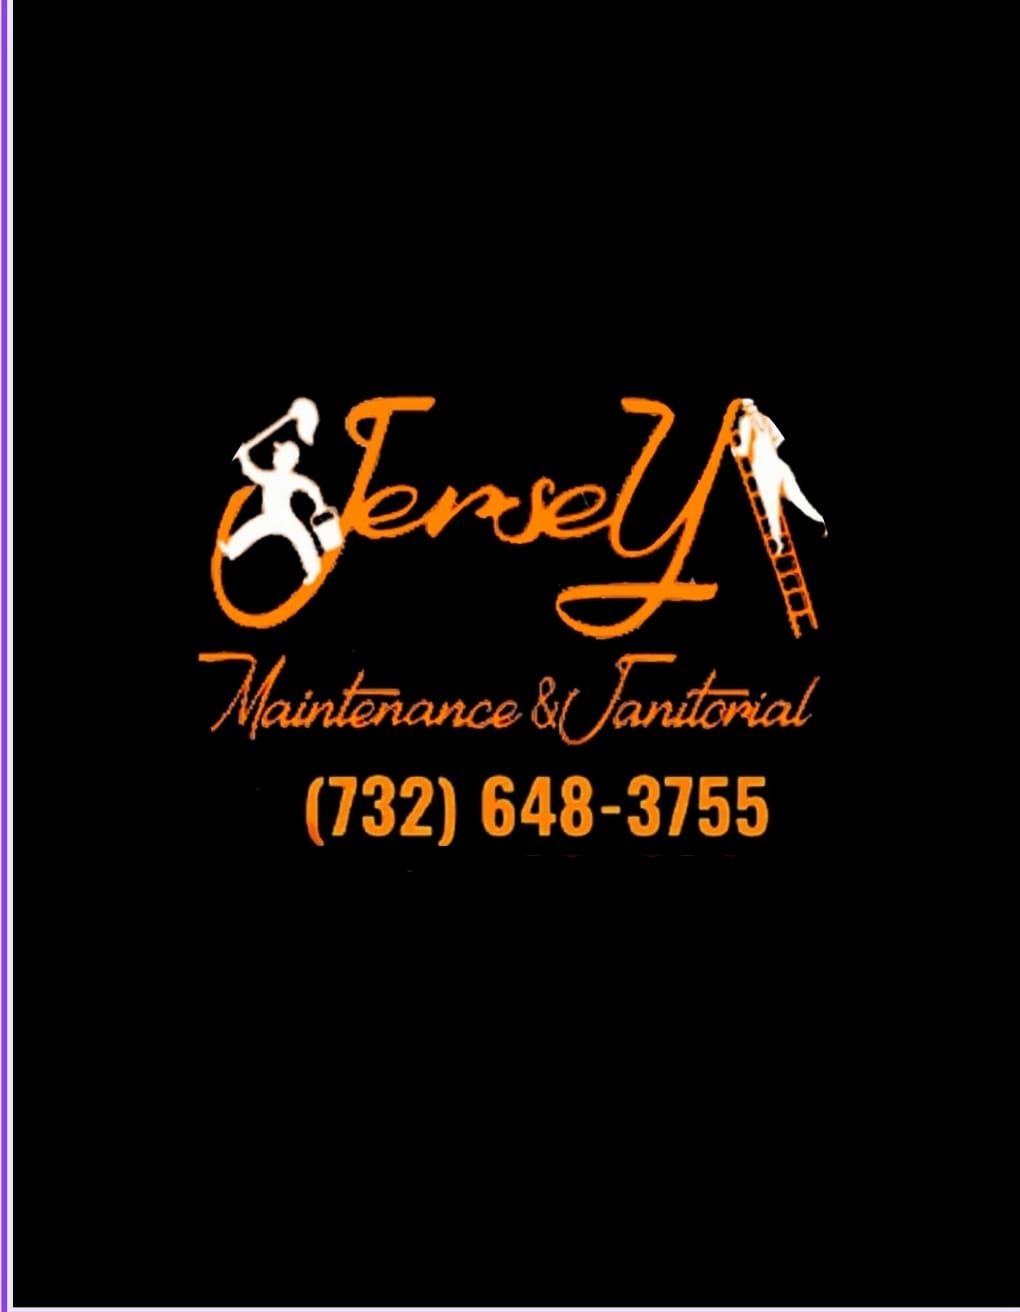 Jersey Maintenance & Janitorial LLC